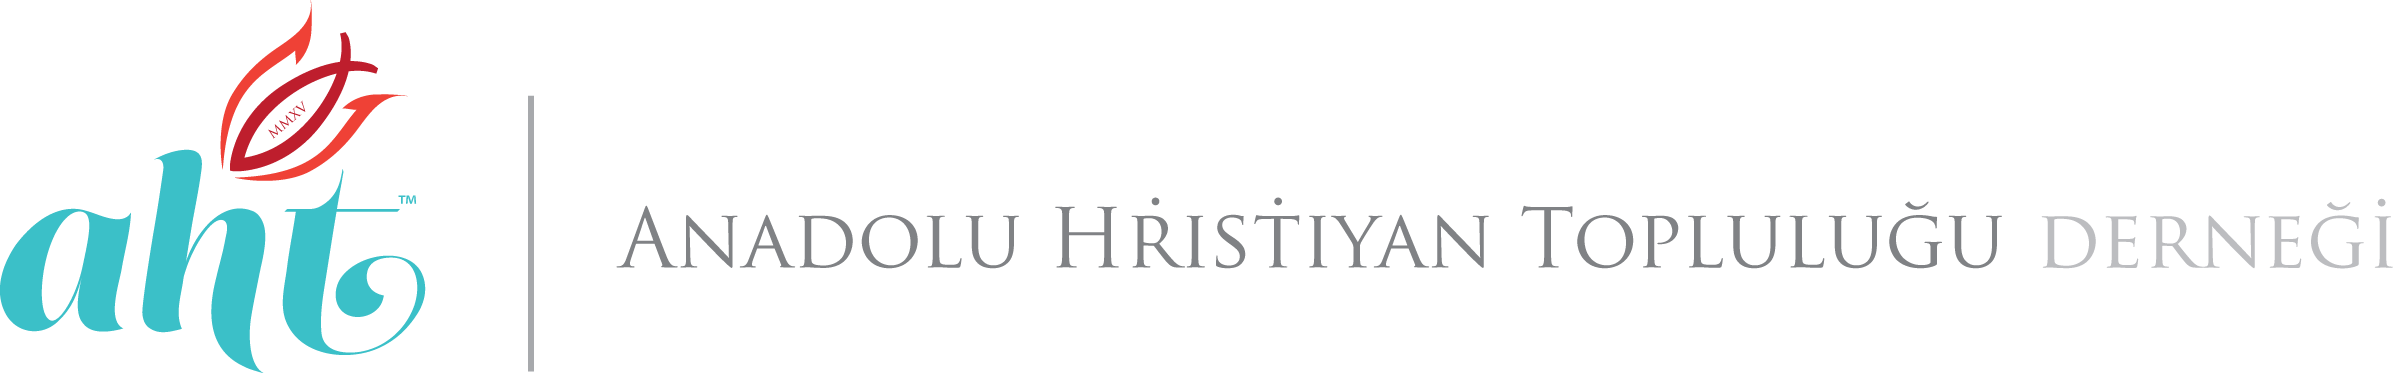 Anatolian Christian Community Association